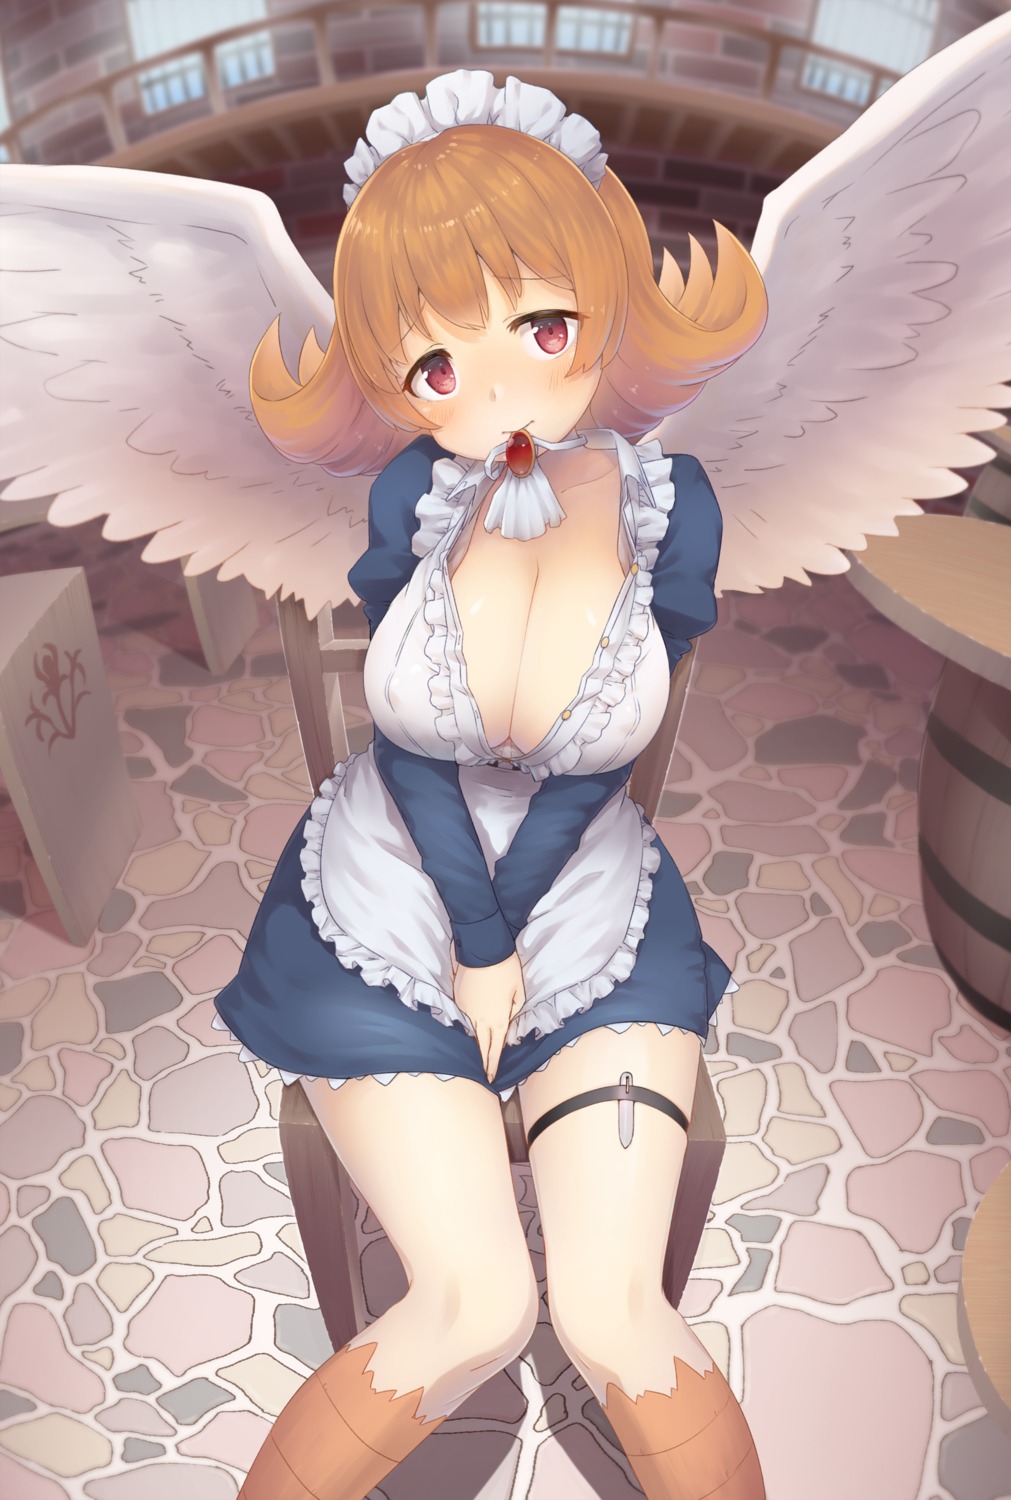 cleavage garter ishuzoku_reviewers maid meidri no_bra open_shirt urigarasu wings